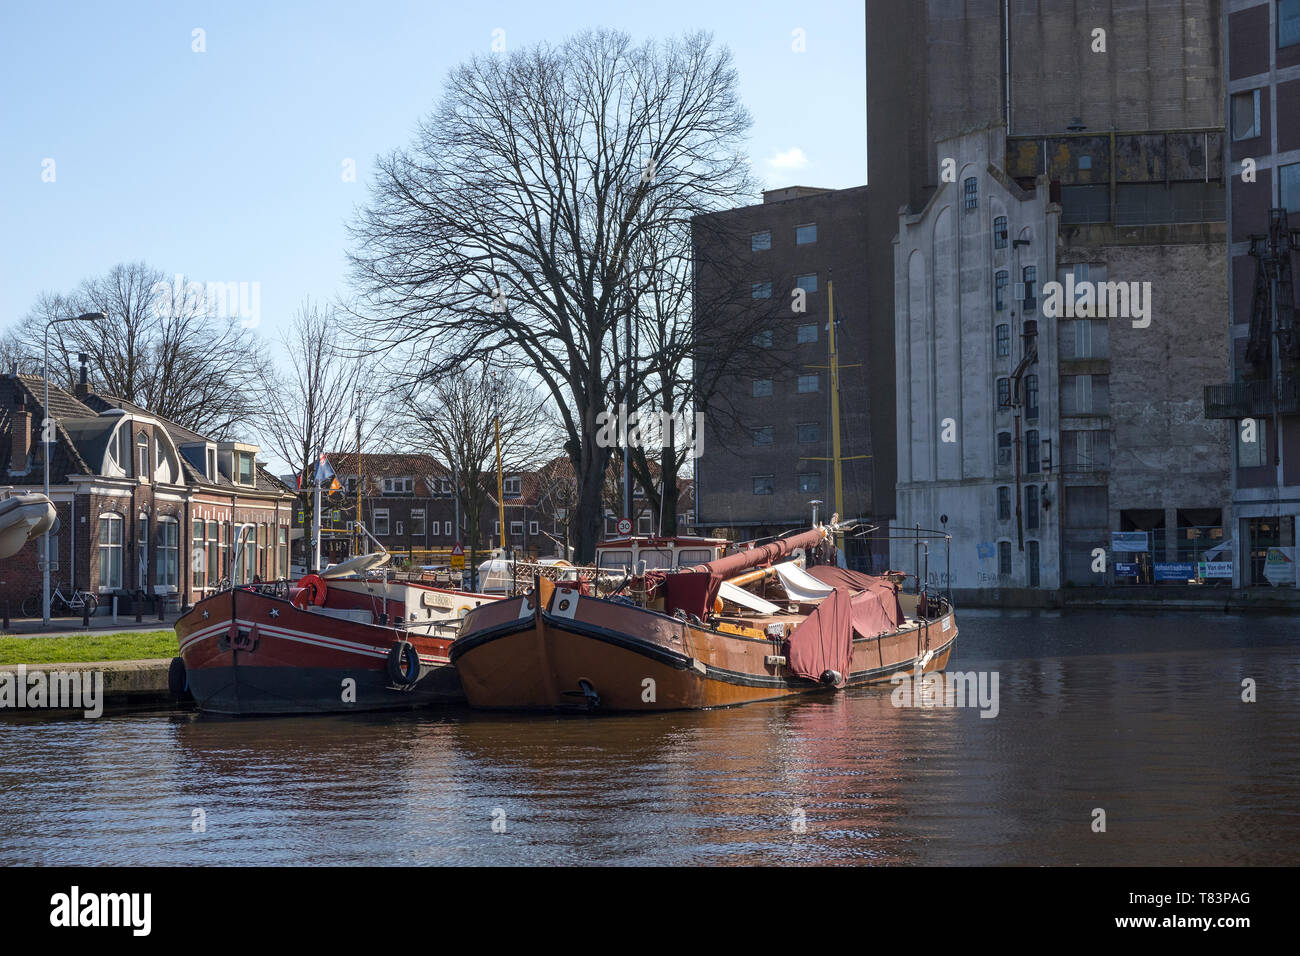 Leiden, Niederlande - 24 März, 2019: traditionelle klassische Boote am Meelfabriek Zijlsingel und die Gebäude im Hintergrund Stockfoto